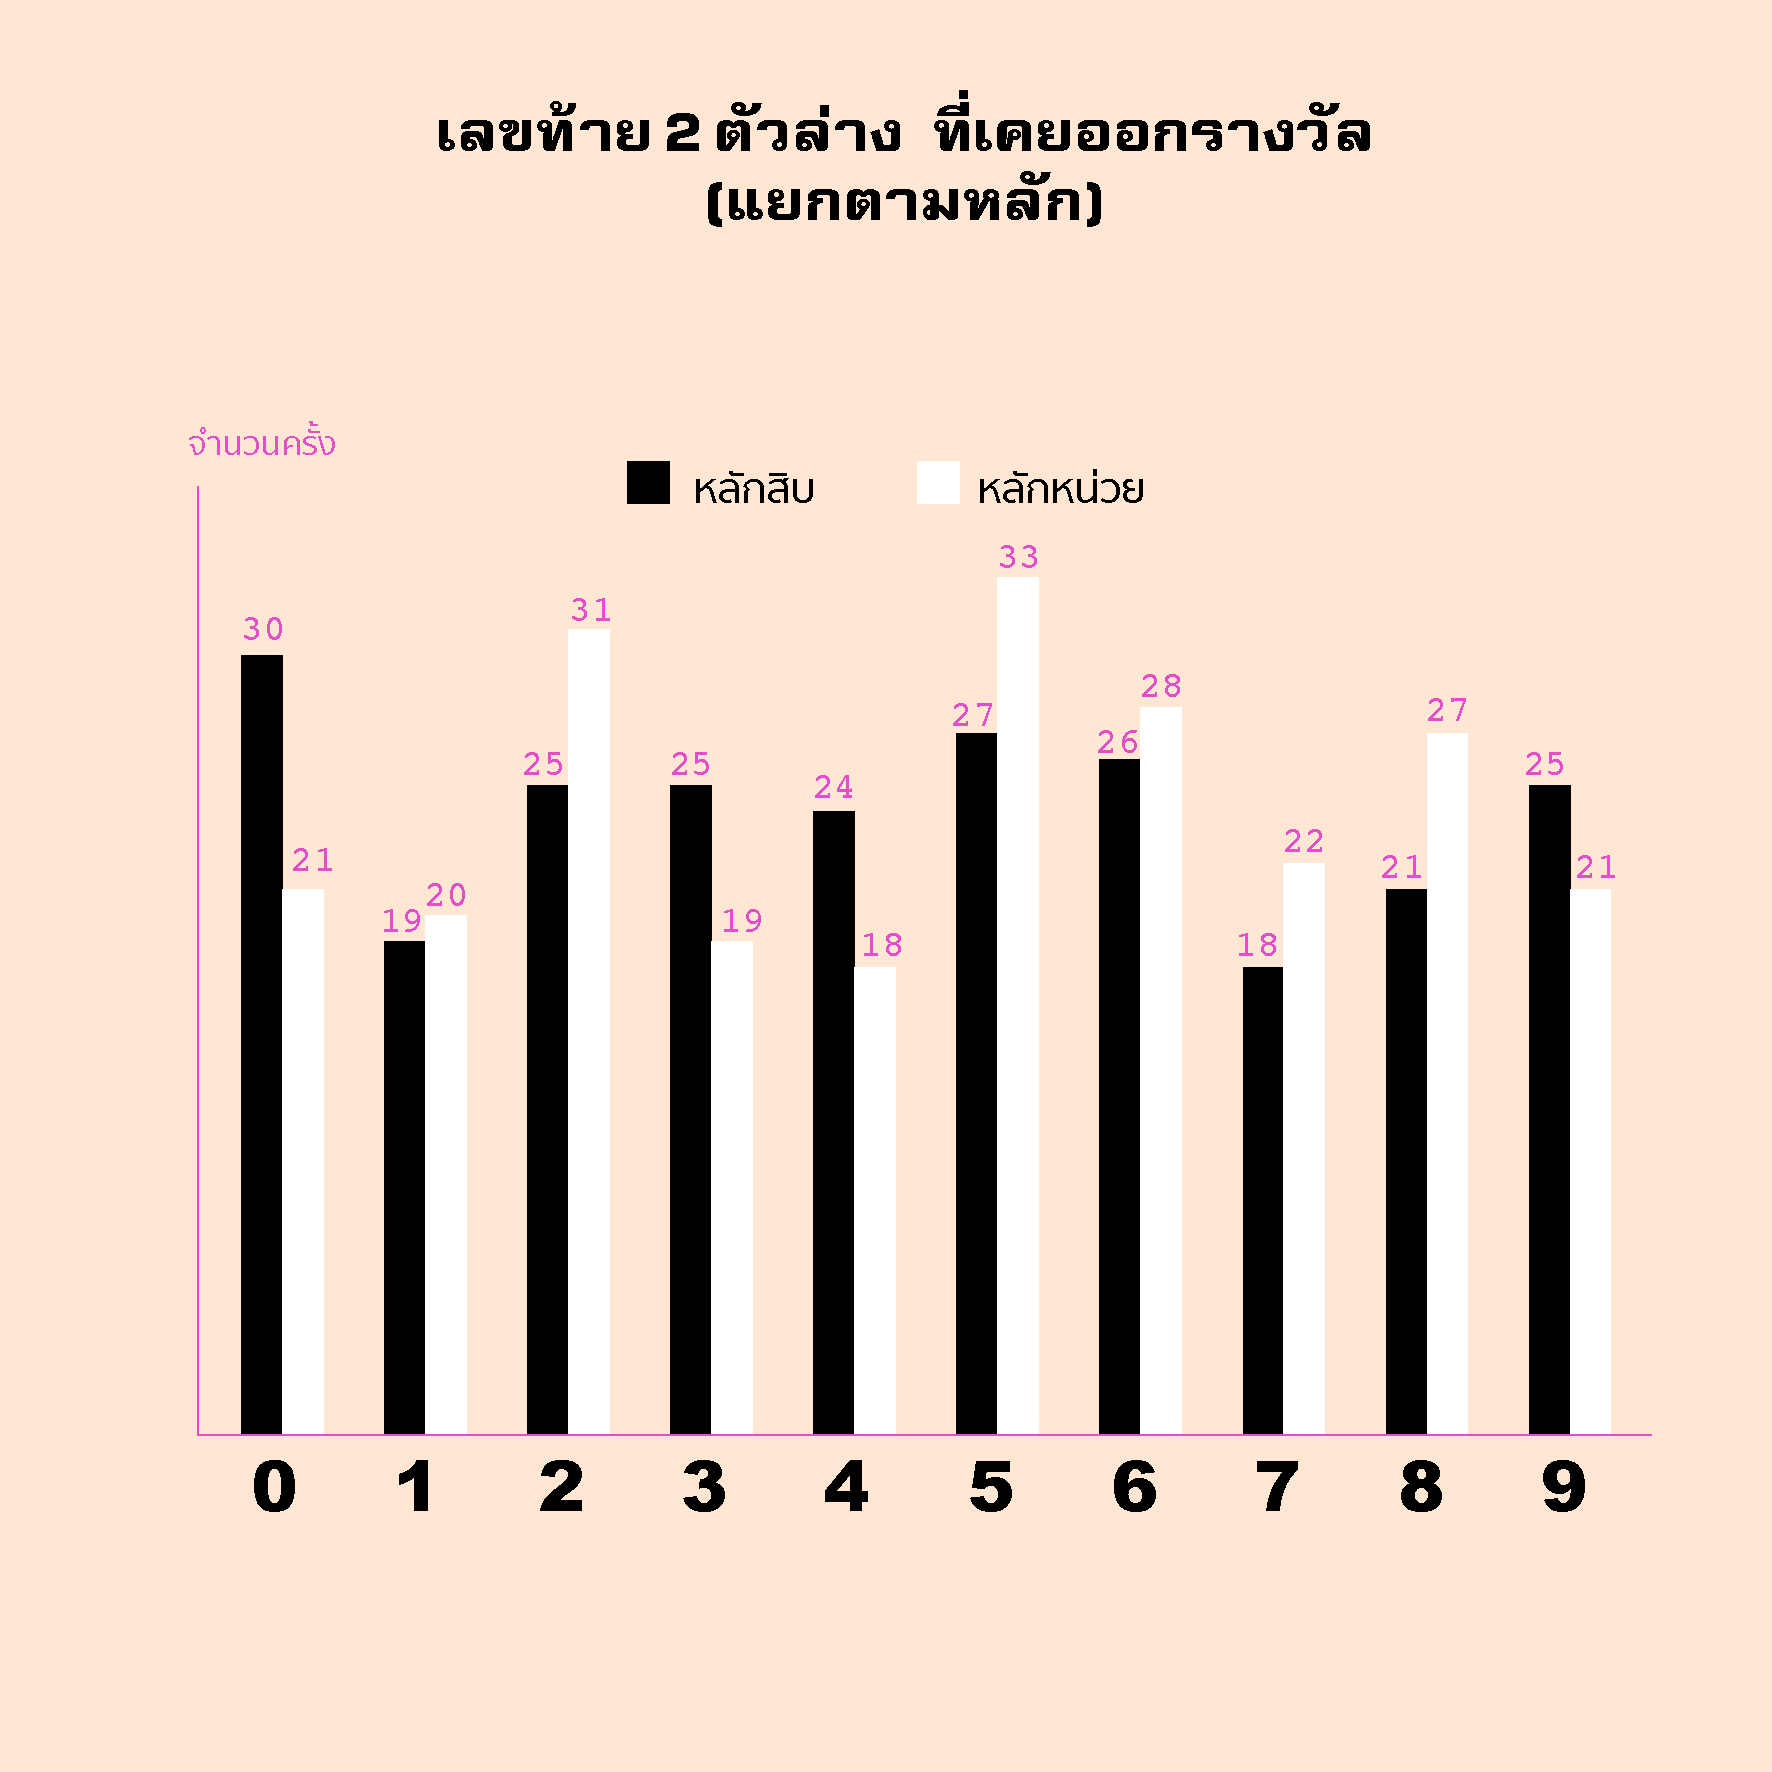 เล่น(กับ)หวย ด้วยสถิติ : สำรวจหวยไทยในรอบ 10 ปี